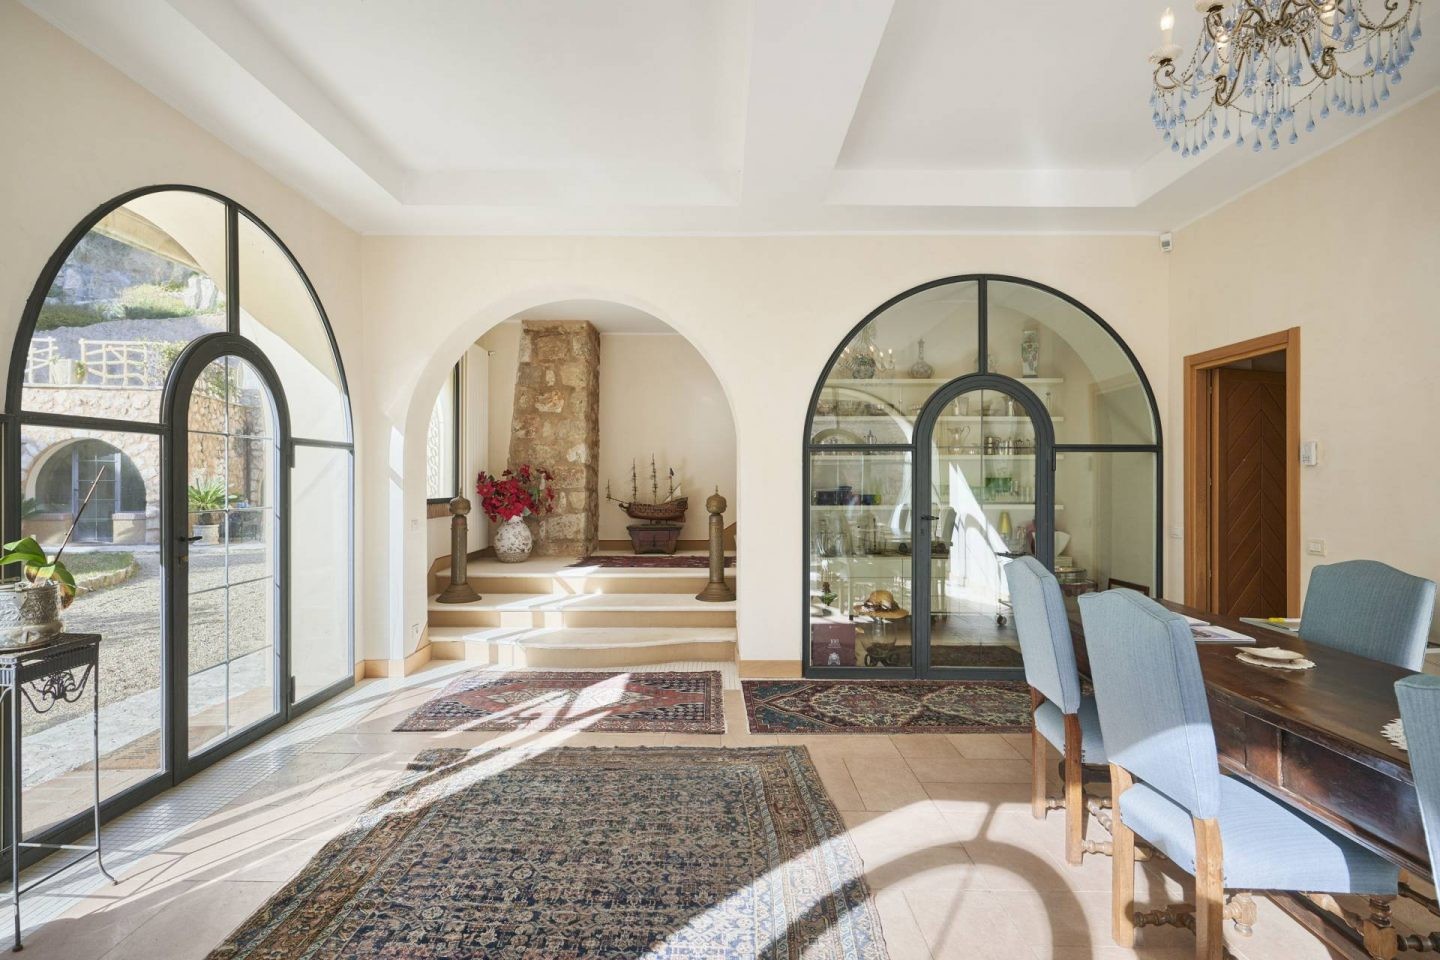 Les fenêtres cintrées laissent entrer beaucoup de lumière dans le salon de la luxueuse demeure.